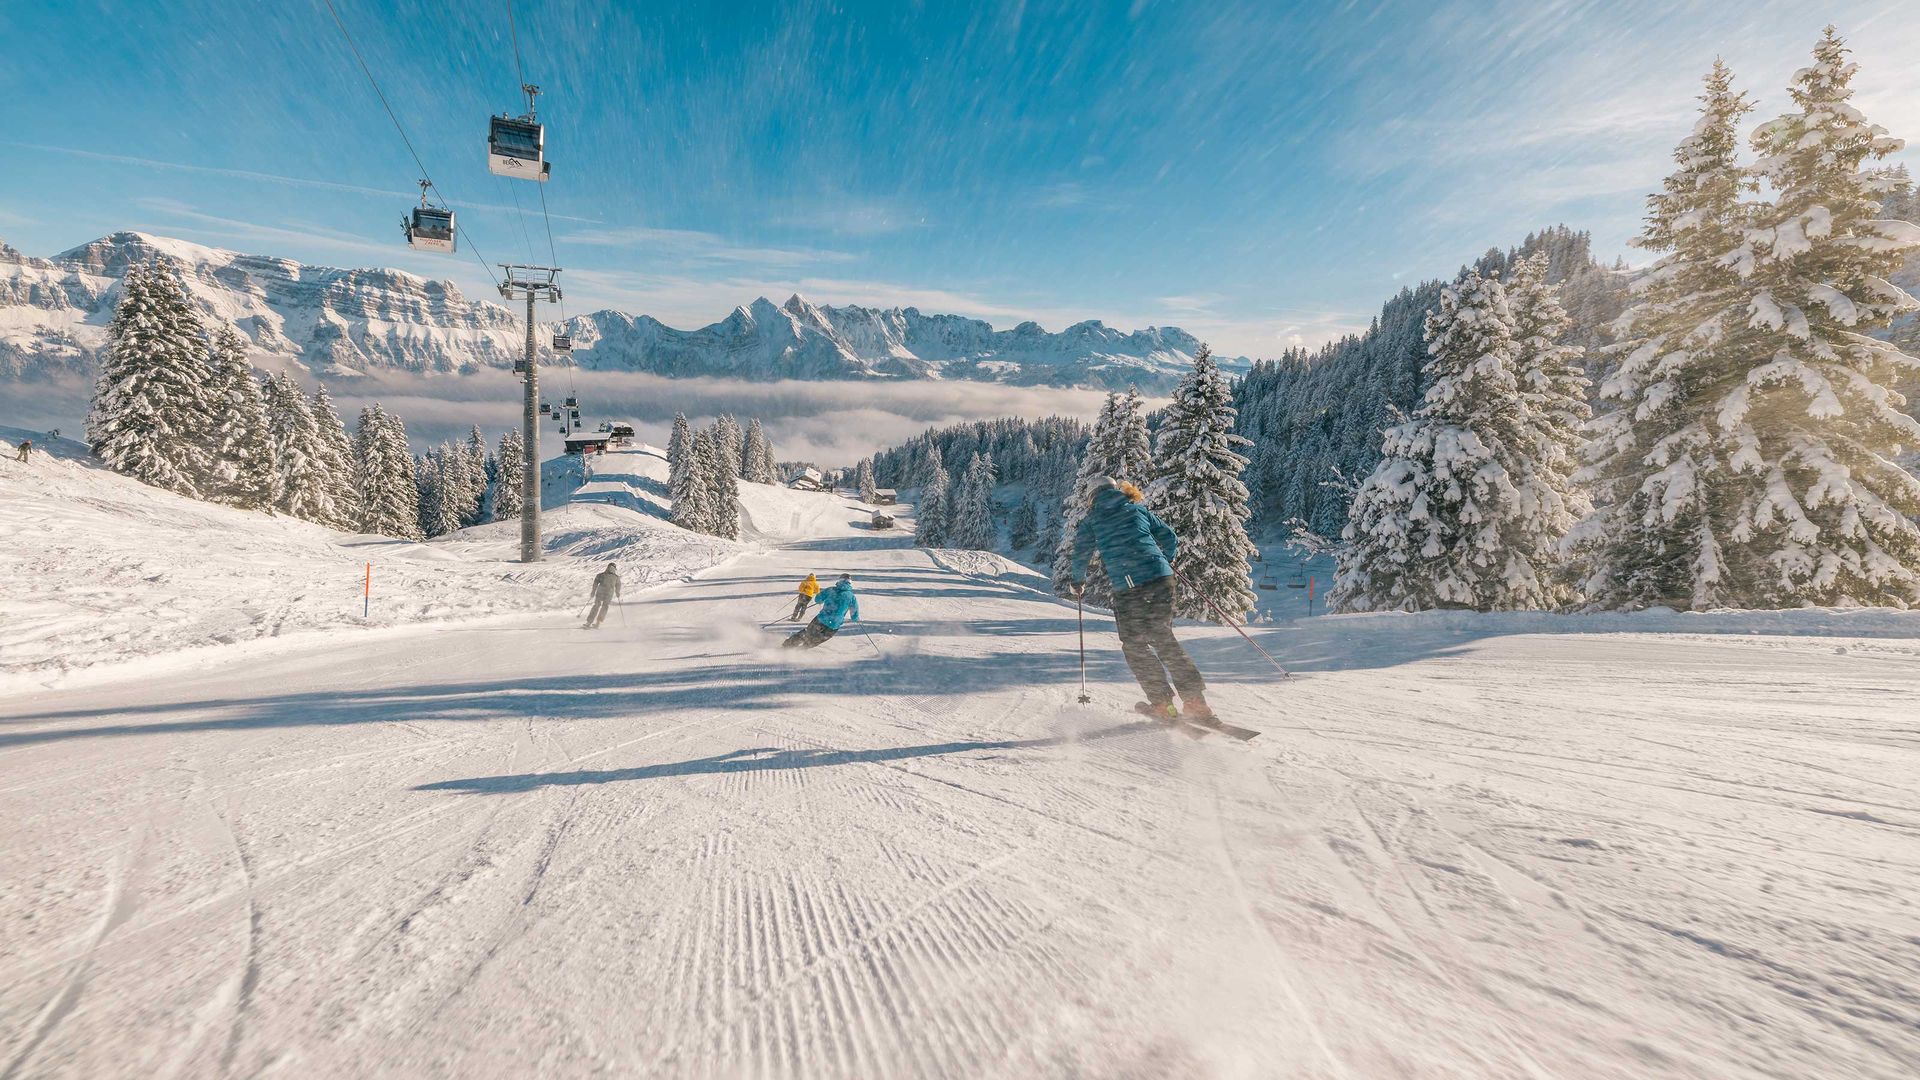 La photo montre un groupe de skieurs dévalant une piste par un hiver magnifique et ensoleillé.